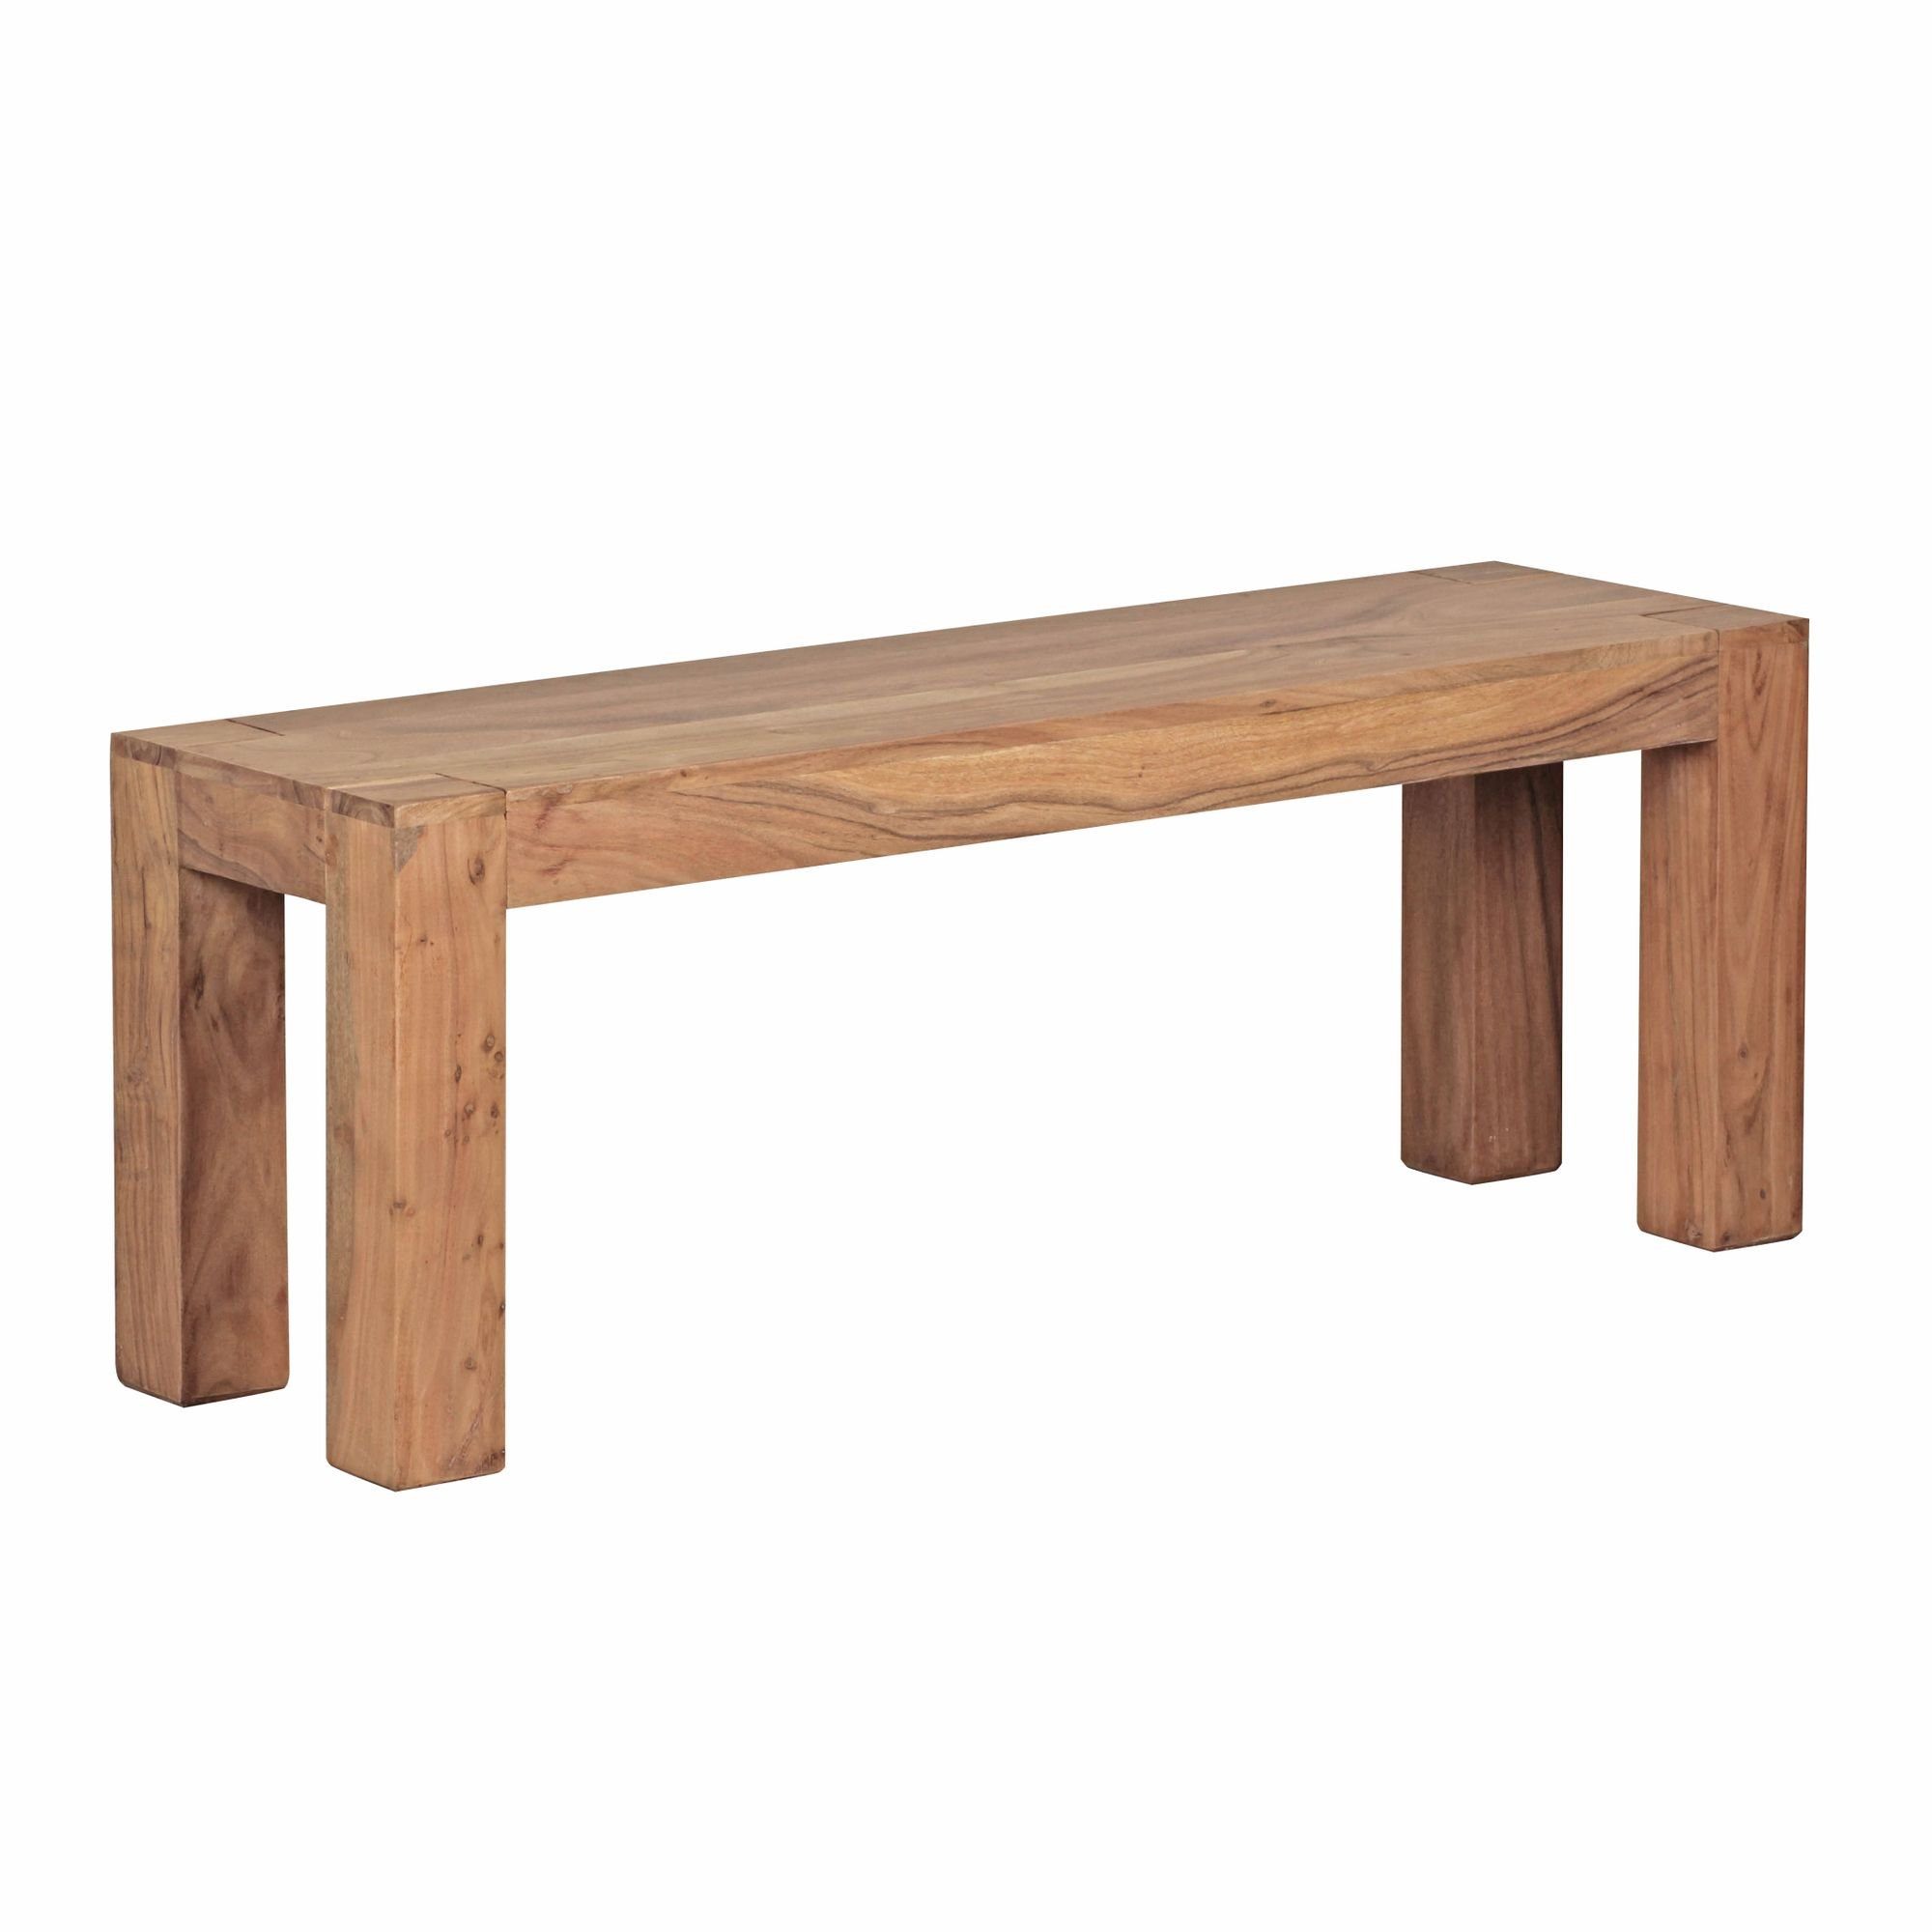 möbelando Sitzbank Esszimmer Sitzbank MUMBAI Massiv-Holz Akazie 120 x 45 x 35 cm Holz-Ban, 35 x 45 x 120 cm (B/H/L)